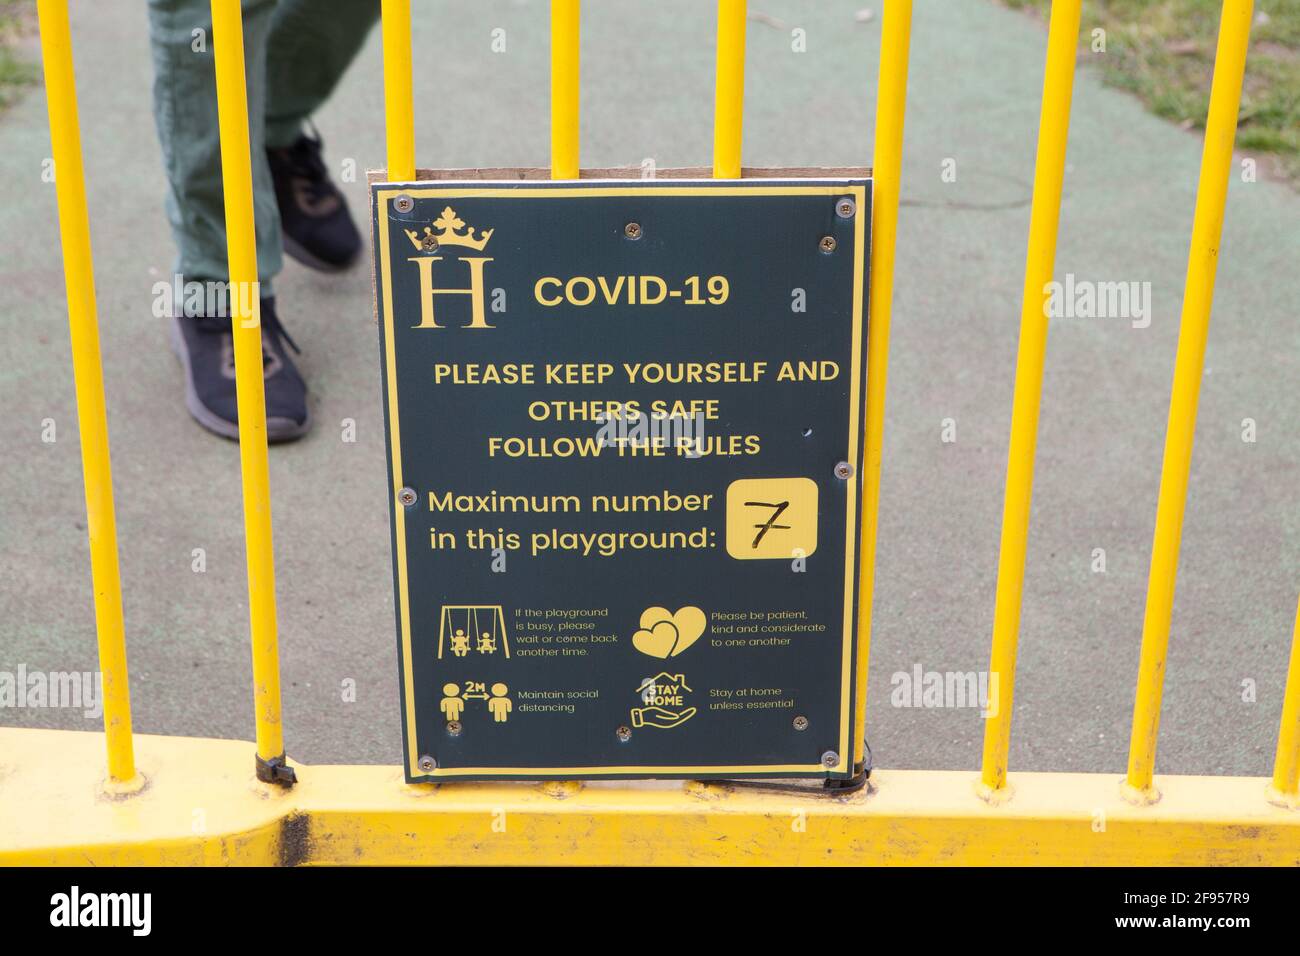 Ein Schild am Eingang zu einem Spielplatz in Henley-on-Thames warnt davor, dass nur 7 Kinder ihn auf einmal nutzen können und die sozialen Distanzierungen und Hygienevorschriften einhalten müssen. Anna Watson/Alamy Stockfoto